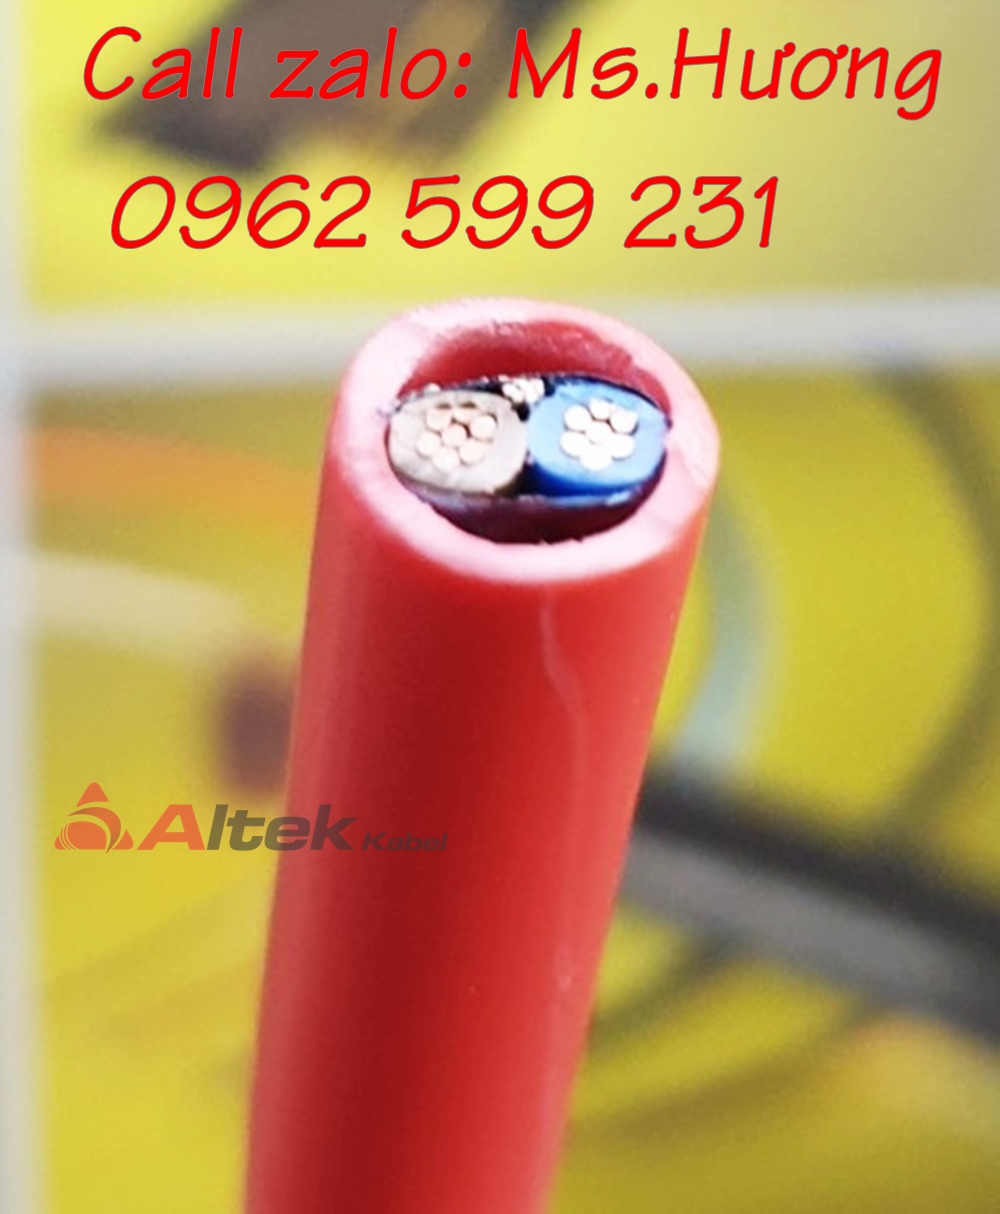 Chuyên phân phối cáp chống cháy chống nhiễu Altek kabel